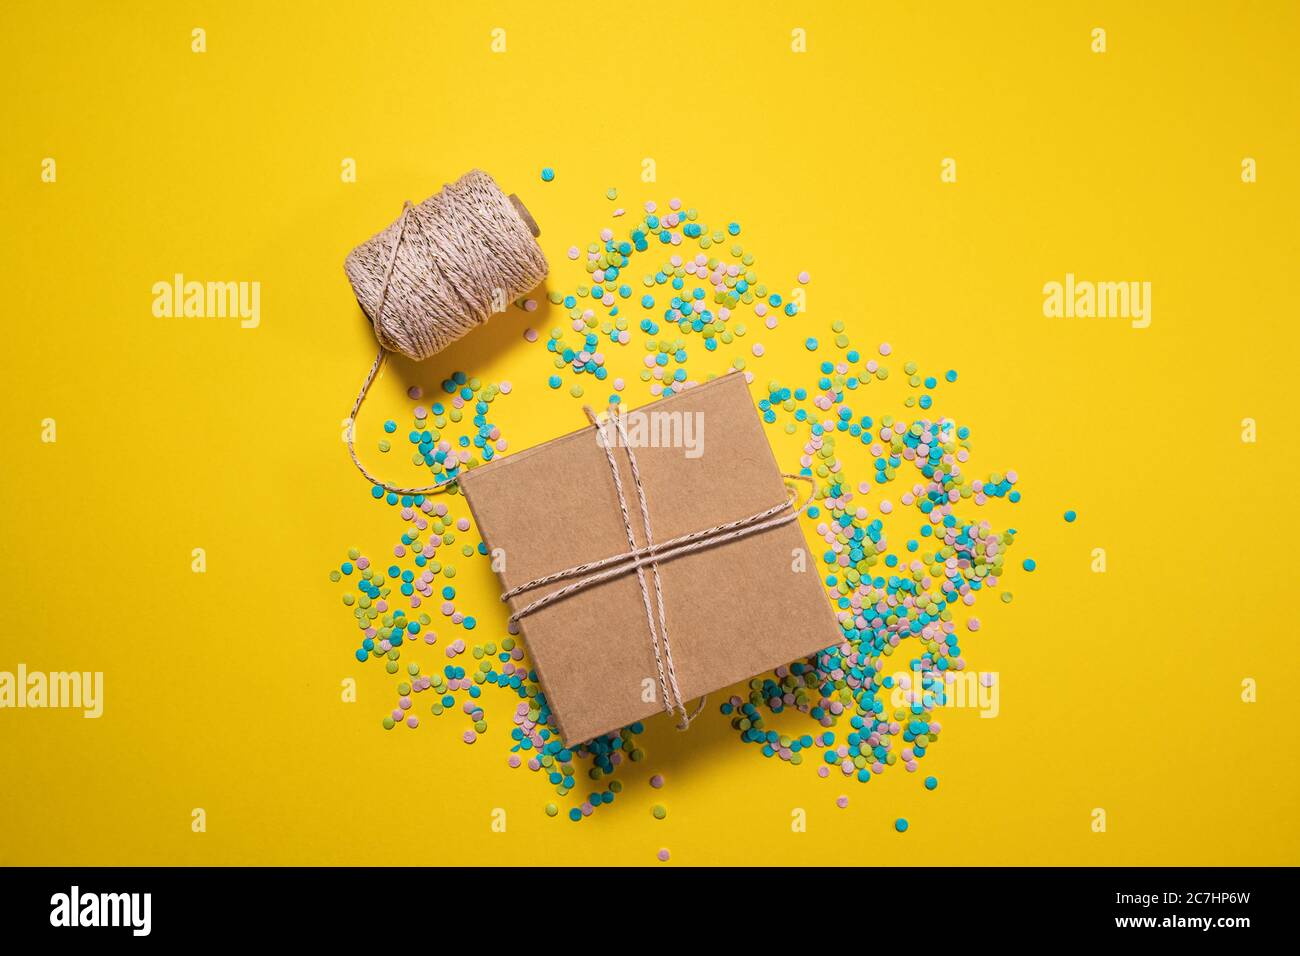 Geschenkbox in rosa Draht und Konfetti um sie gewickelt, gelb hellen Hintergrund, Geburtstagsgeschenk, Grußkarte Stockfoto